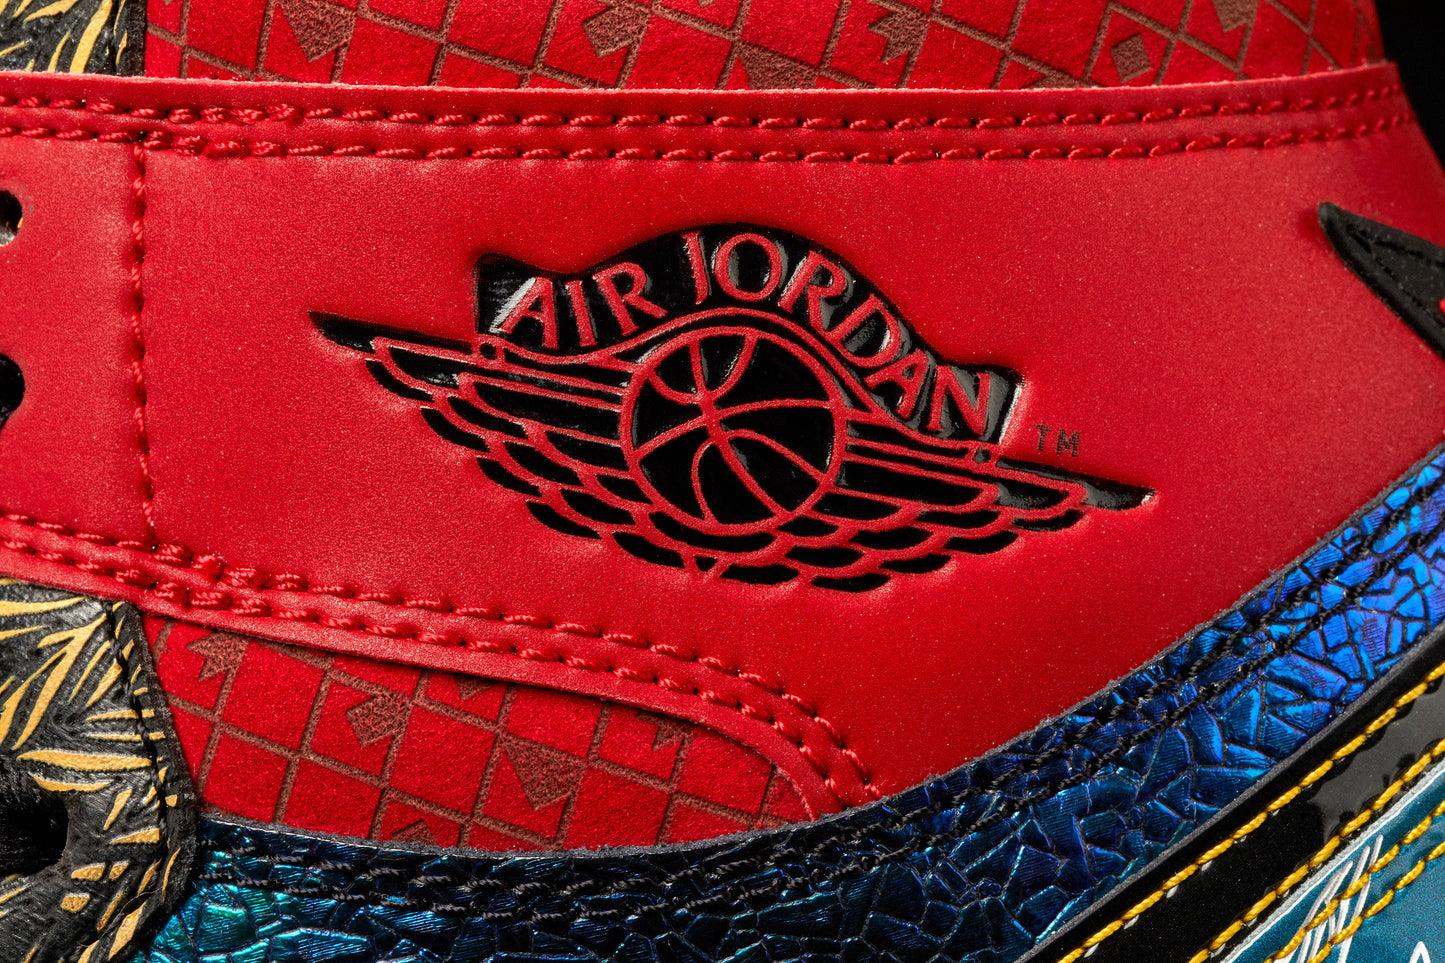 Air Jordan 1 High "What The Doernbecher"